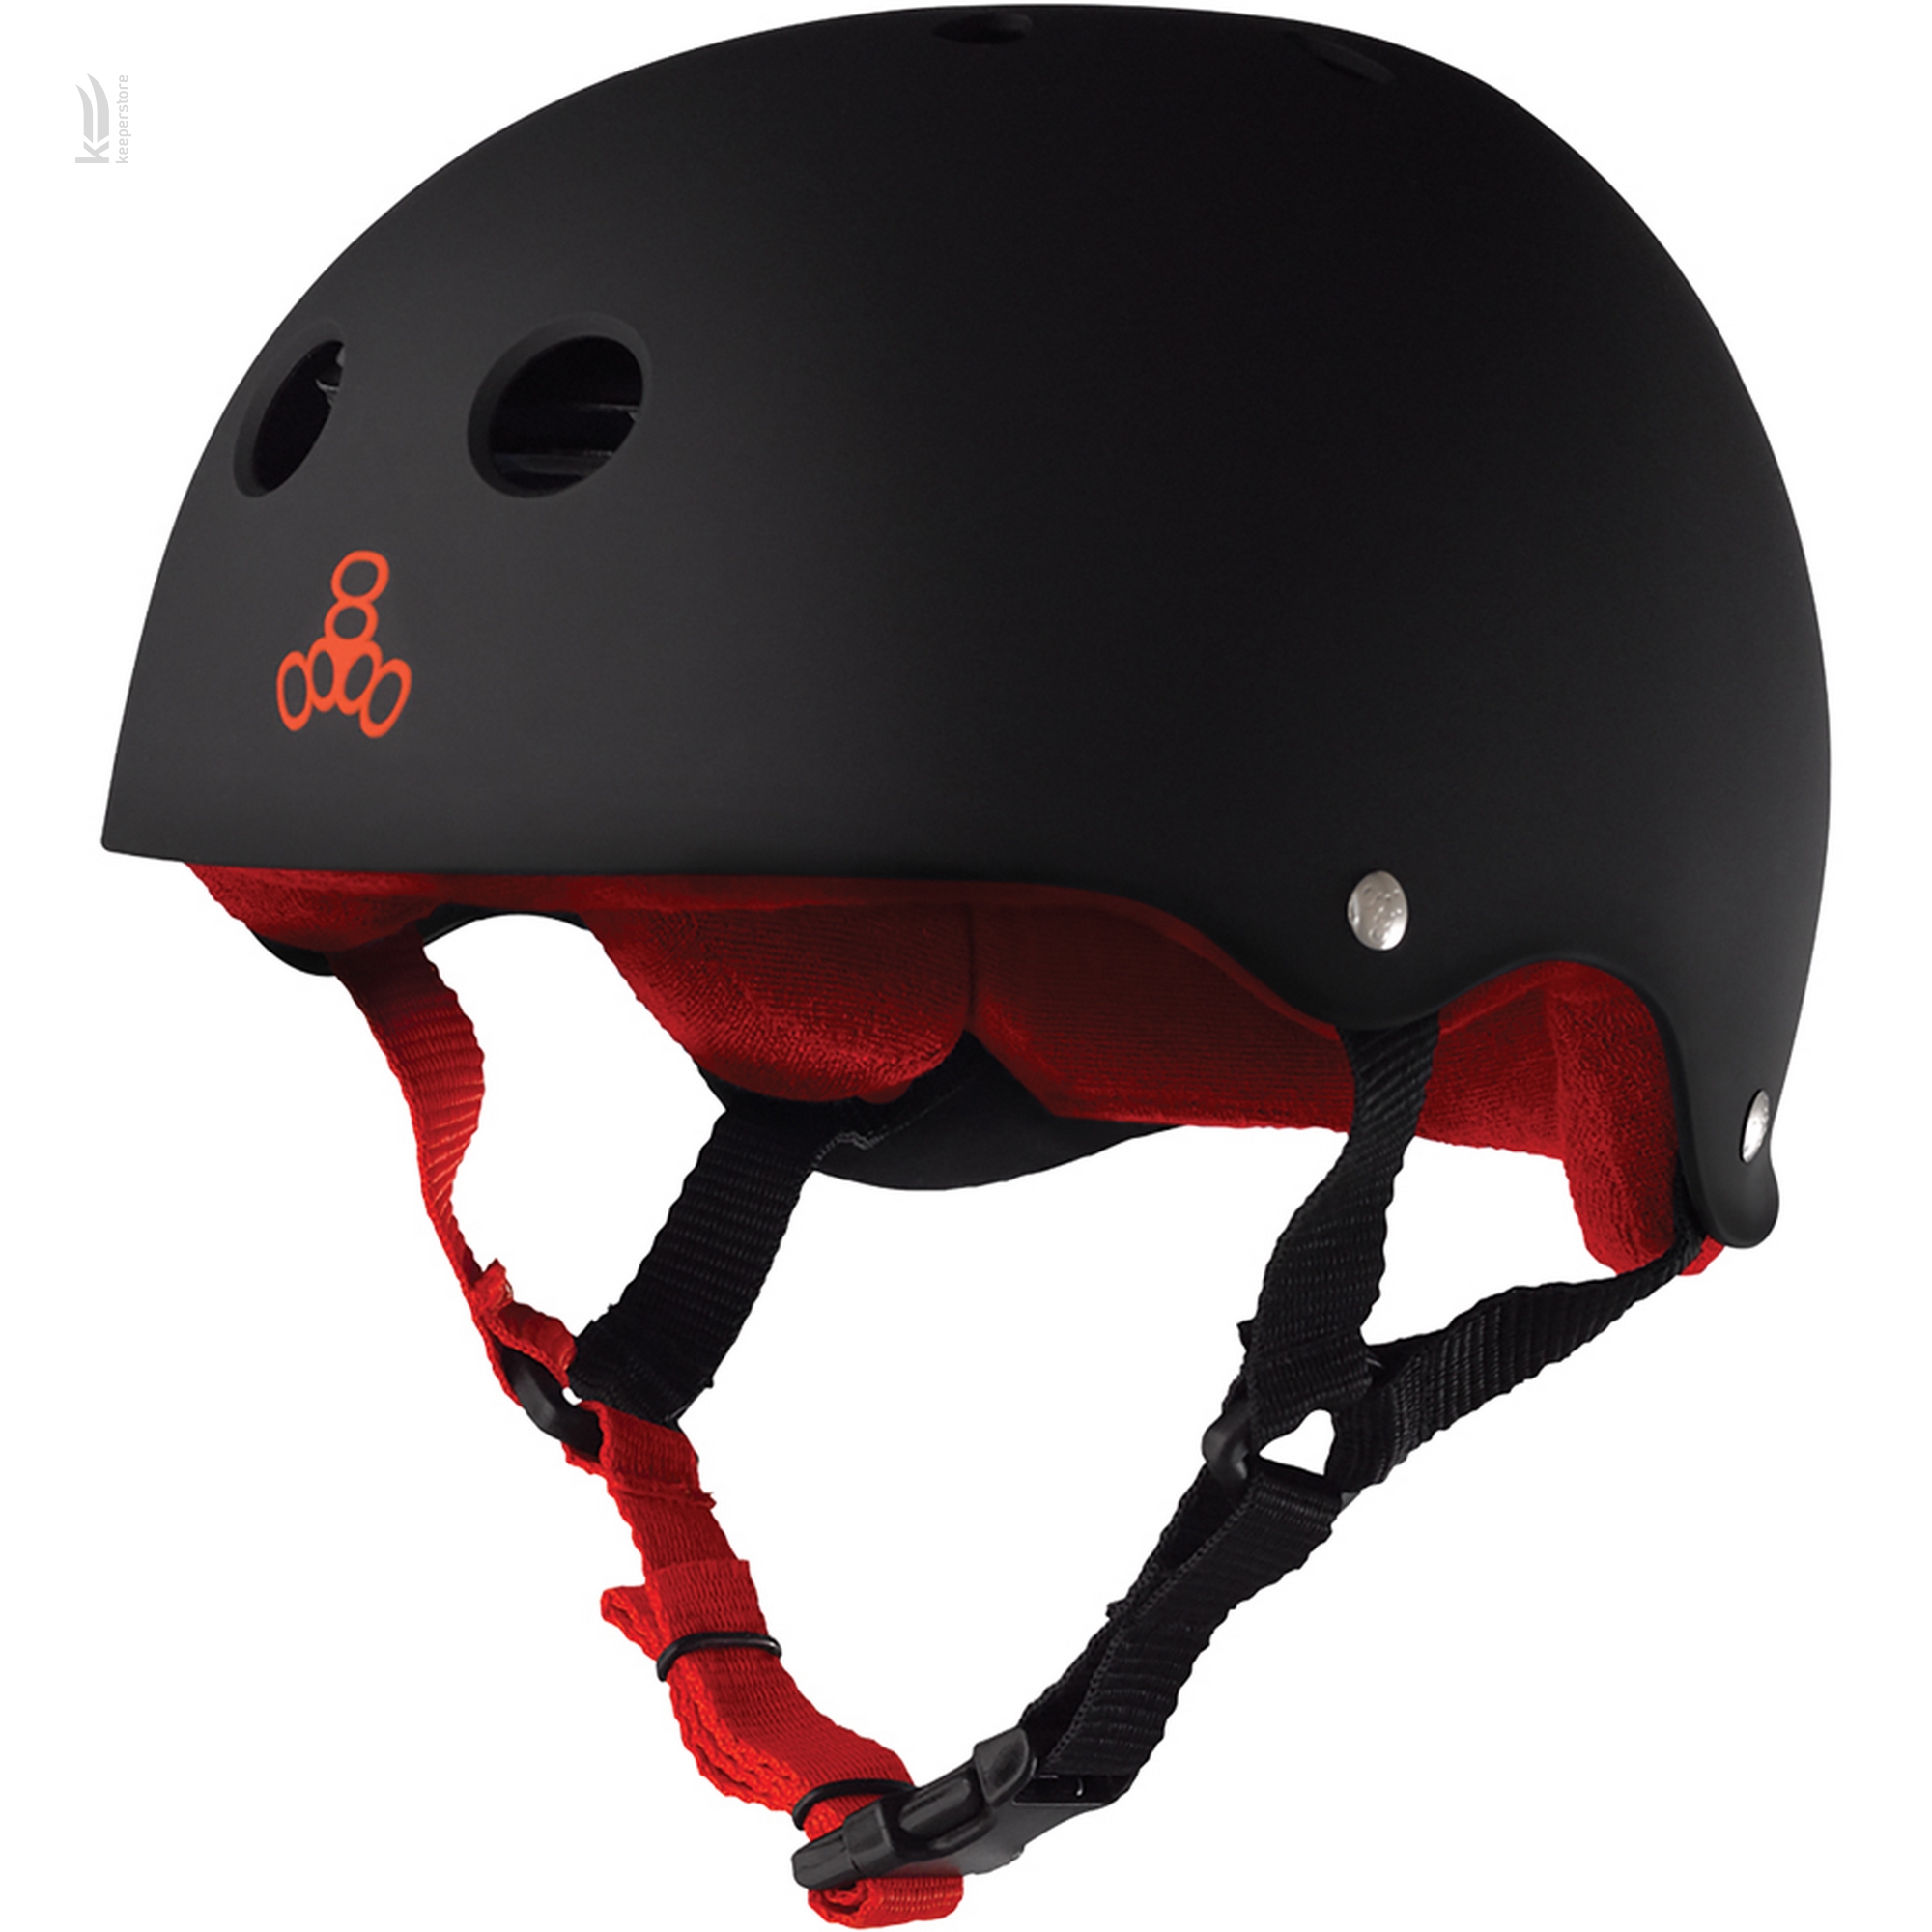 Захисний шолом казанок Triple8 Sweatsaver Helmet Black w/ Red (L)